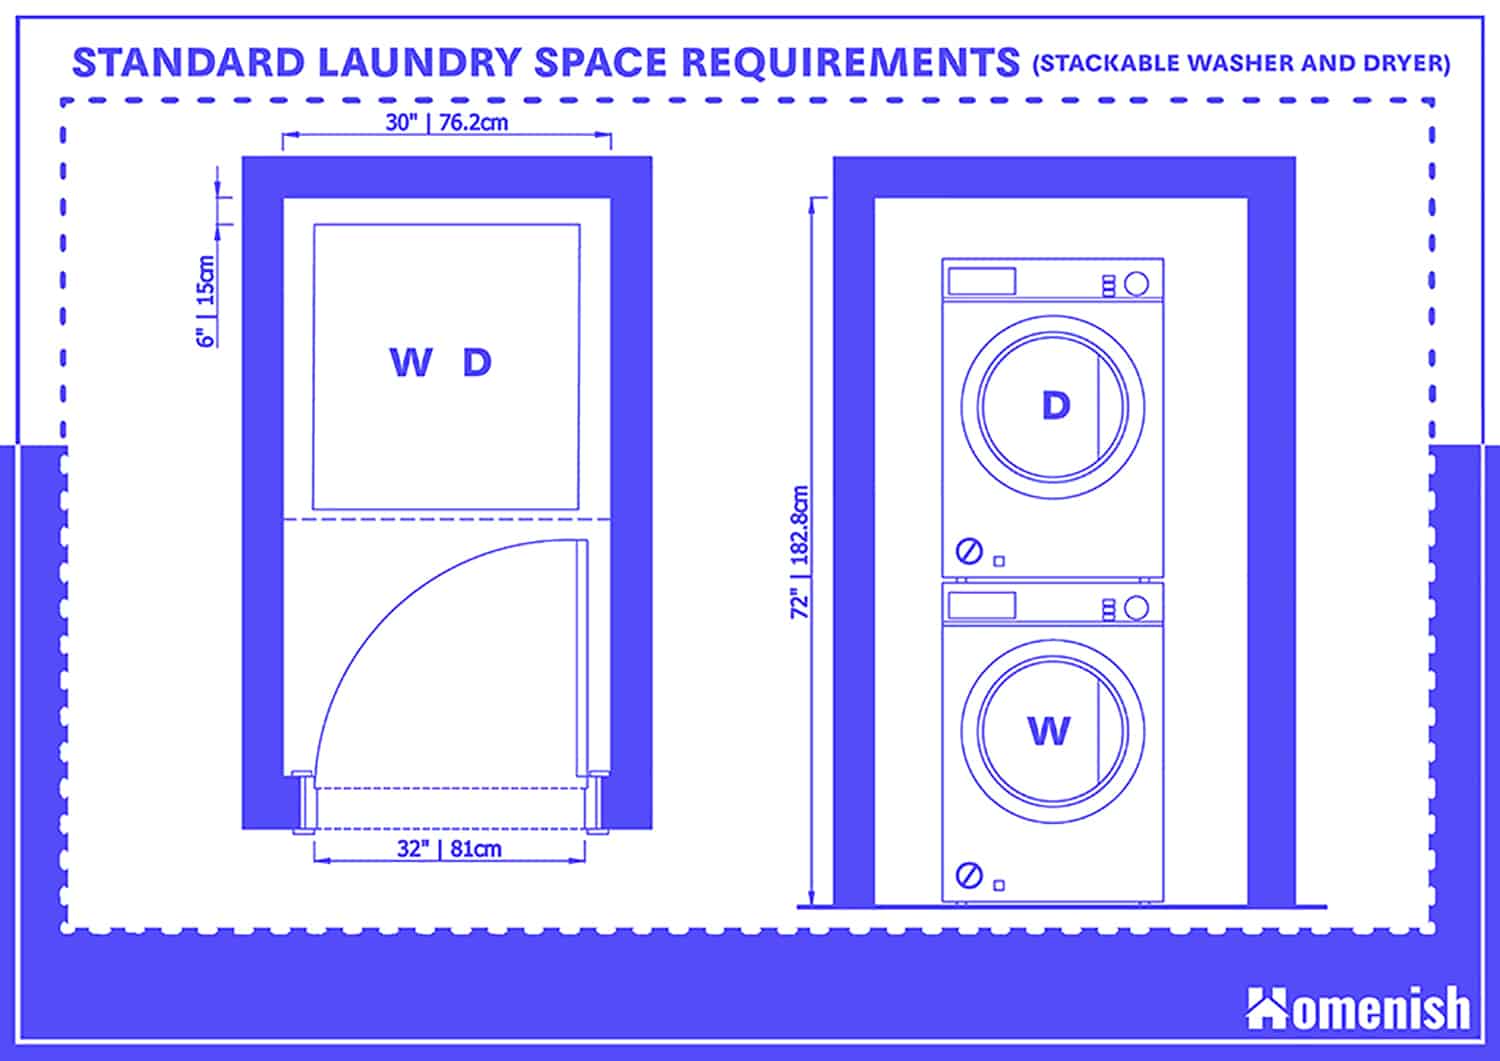 標準洗衣房空間要求-可堆疊洗衣機和烘幹機